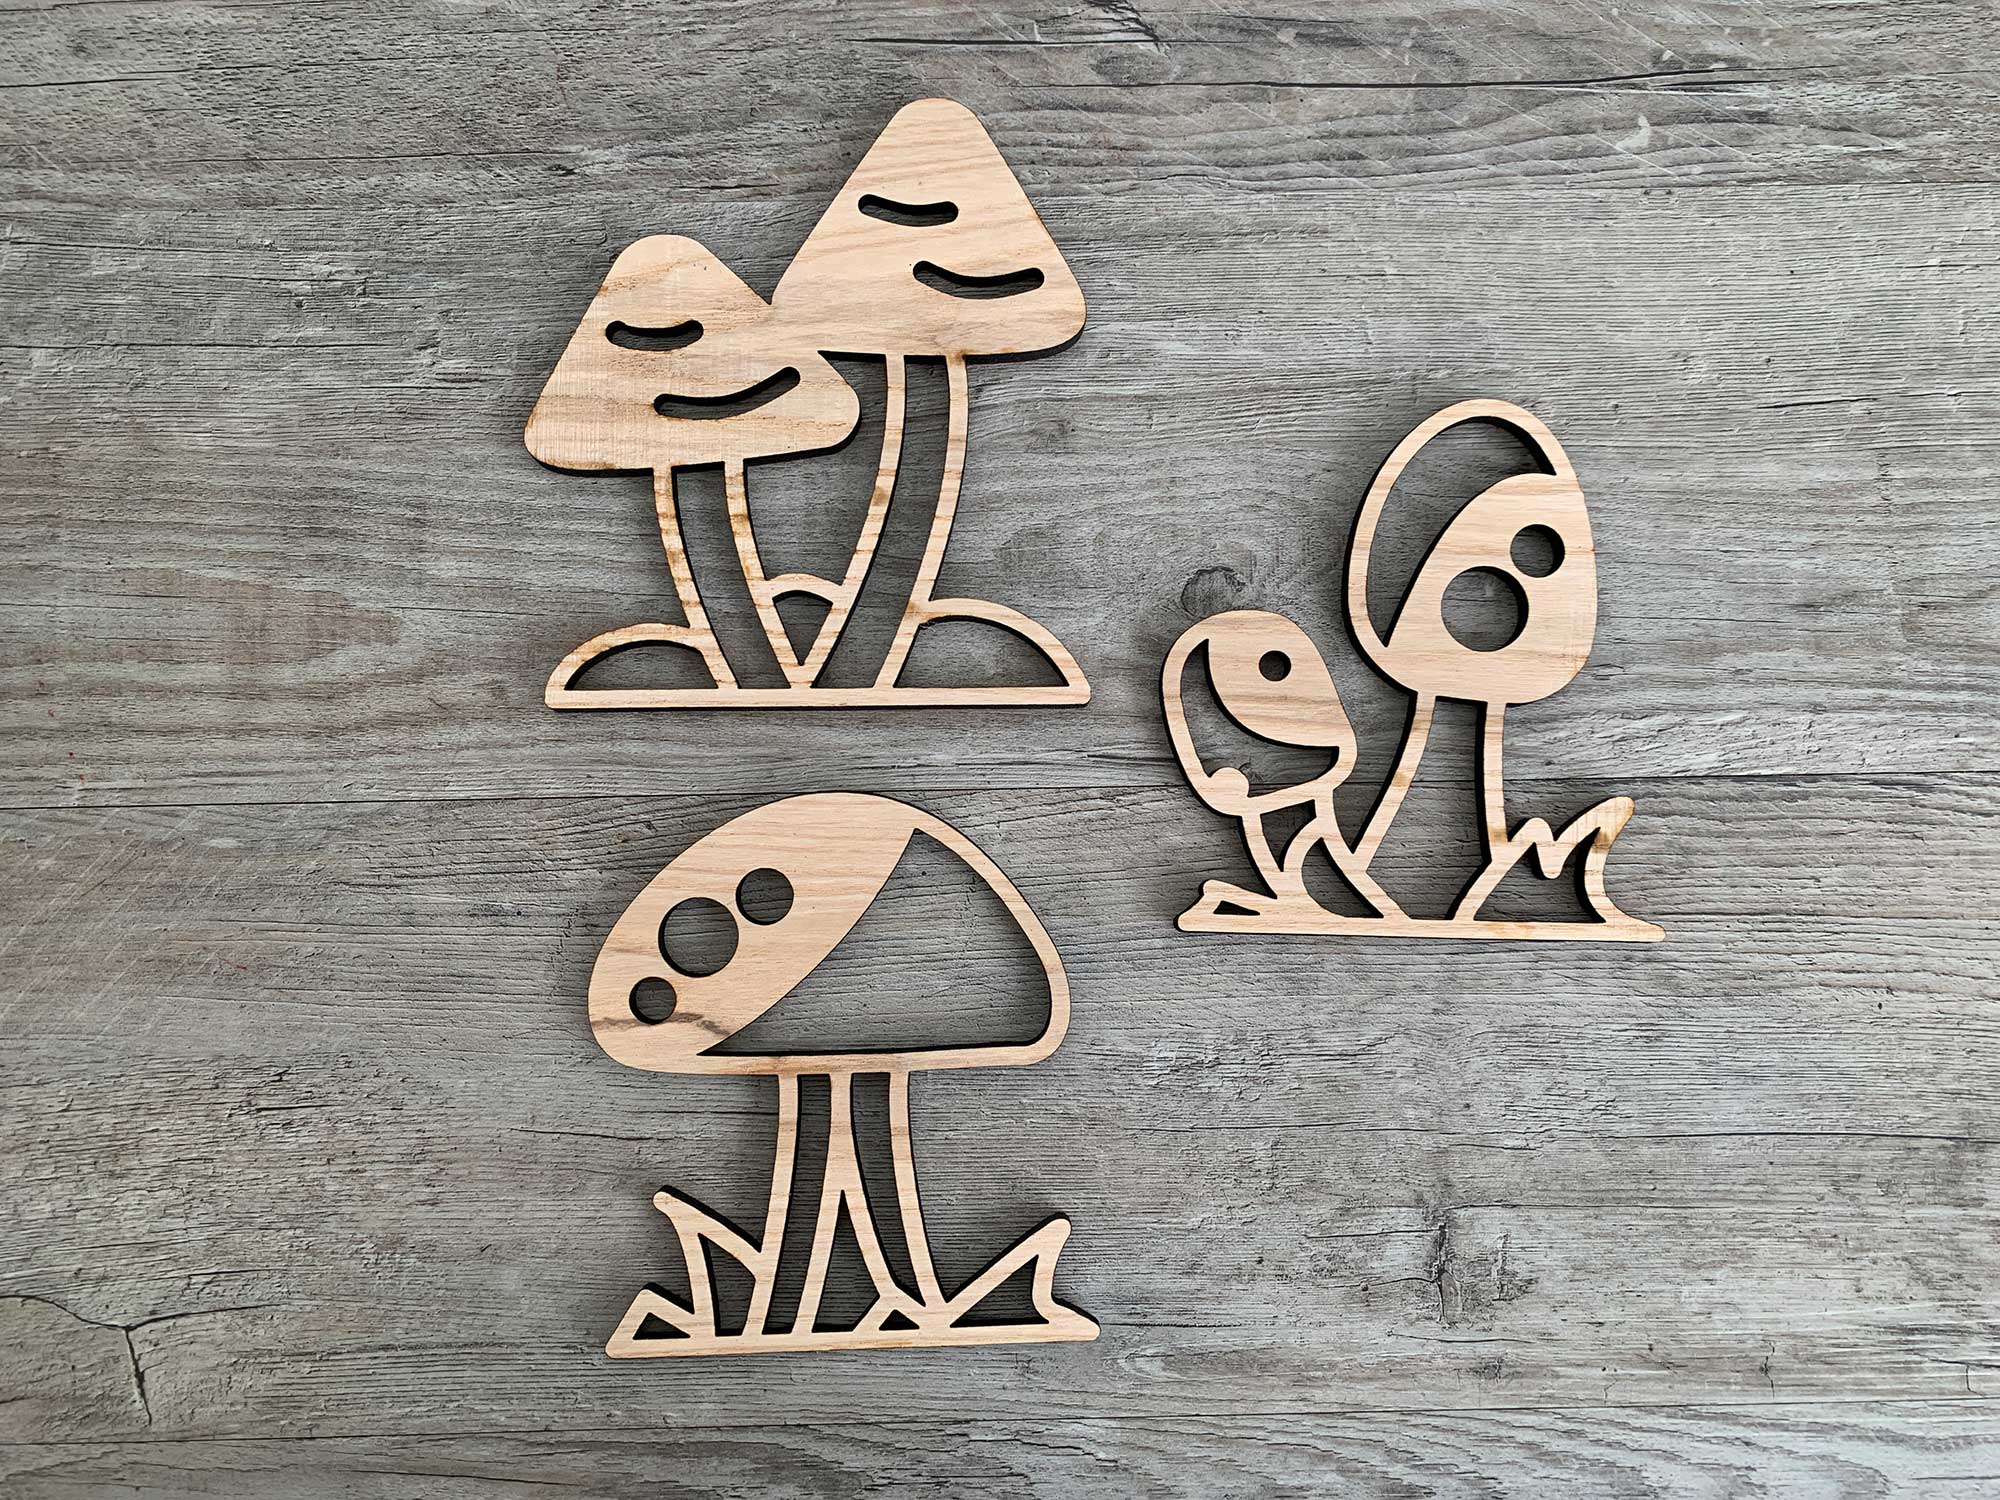 Wooden Mushrooms - set of 3 – Inspired EC